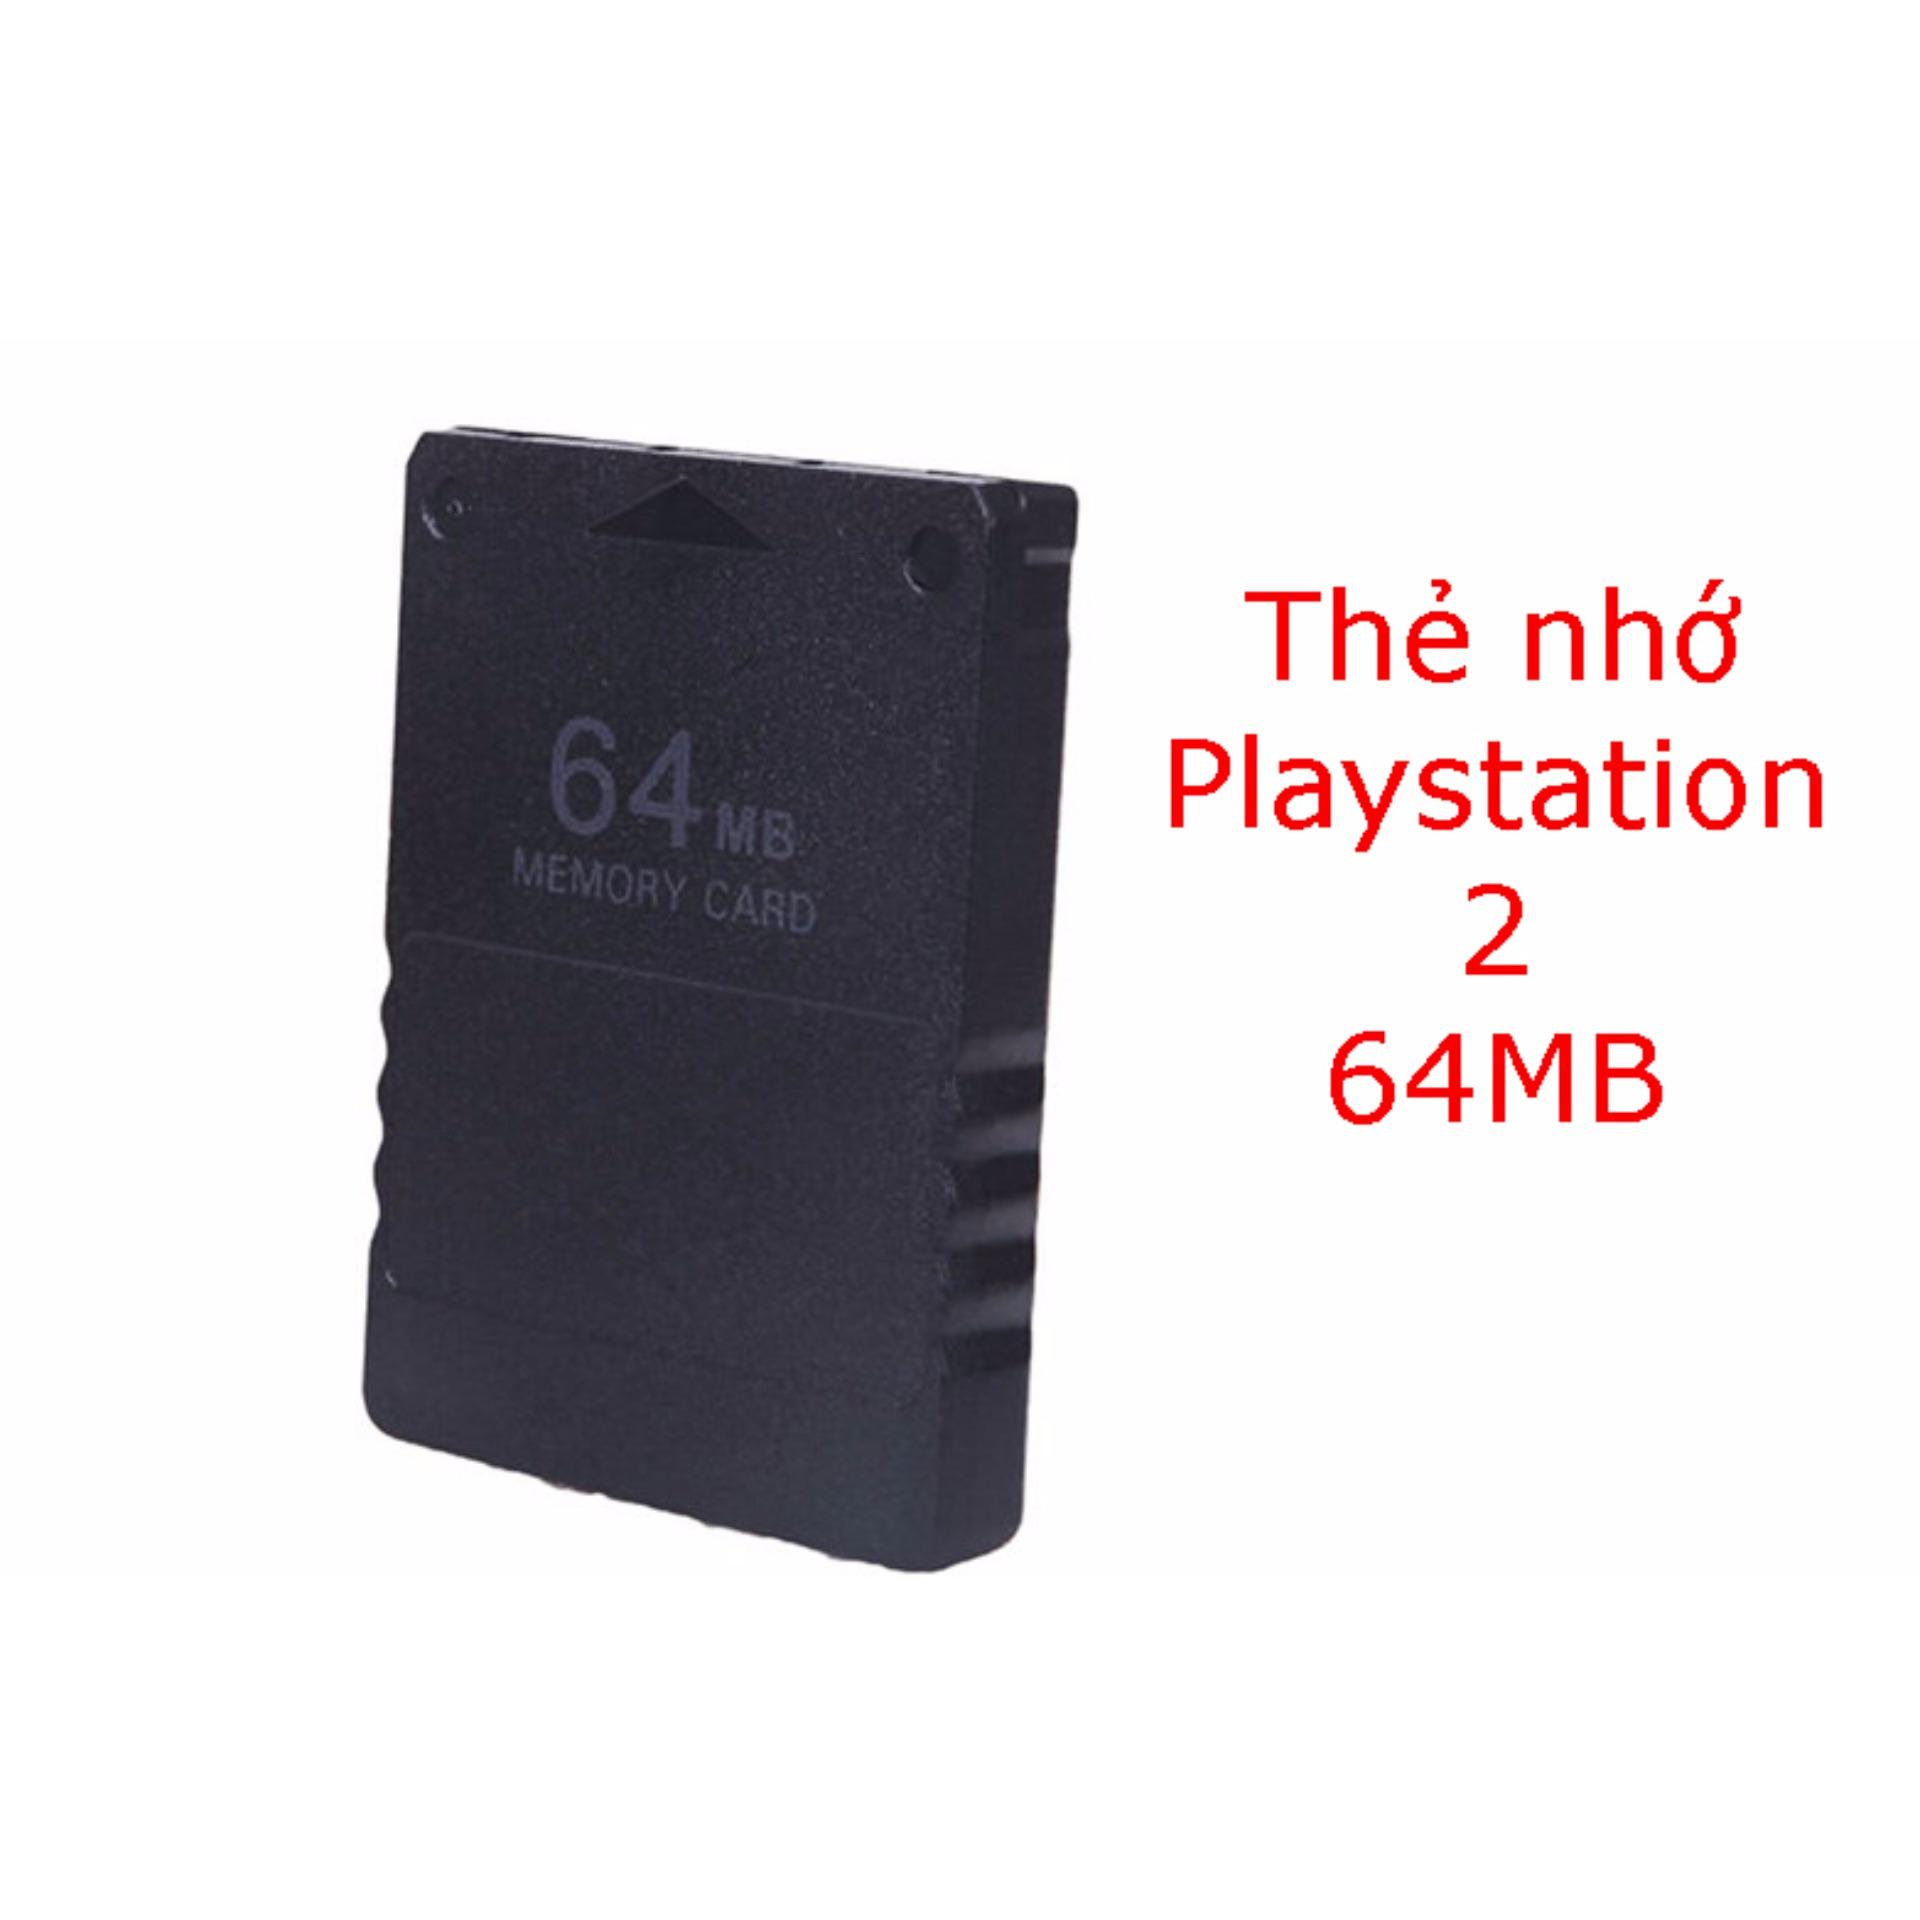 Thẻ nhớ 64Mb cho máy chơi game Playstation 2, PS2